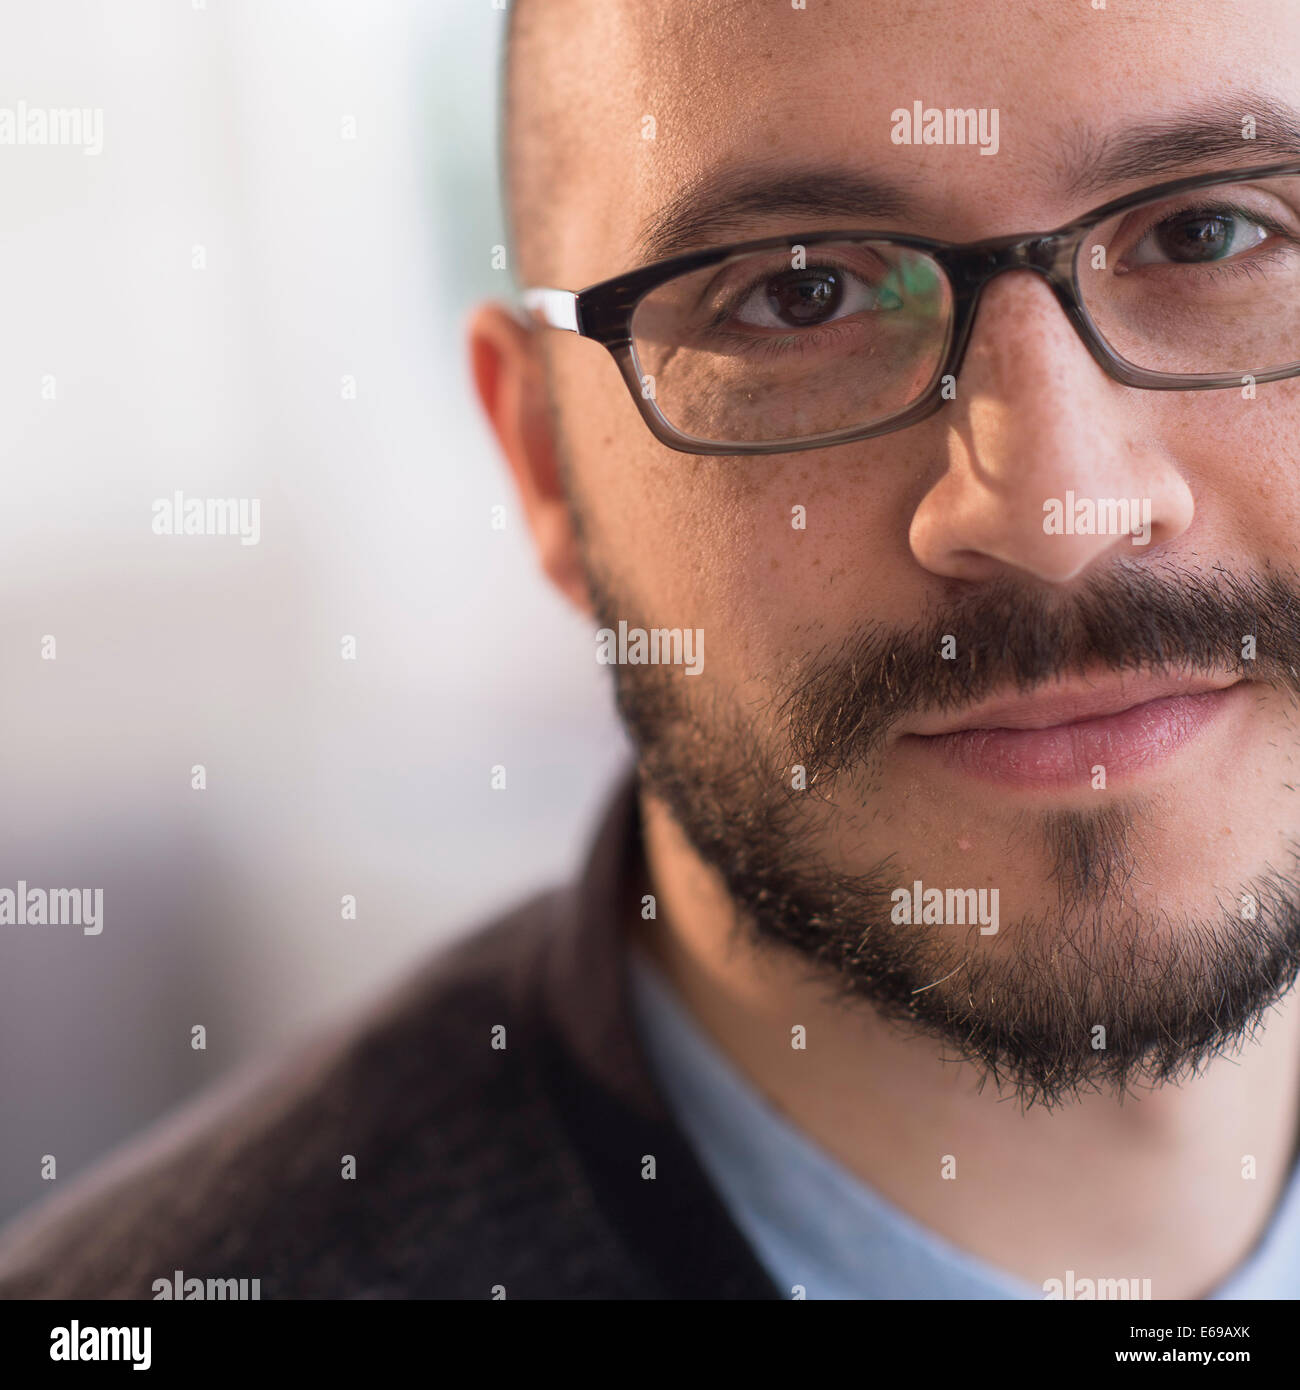 Hispanic man smiling in eyeglasses Stock Photo